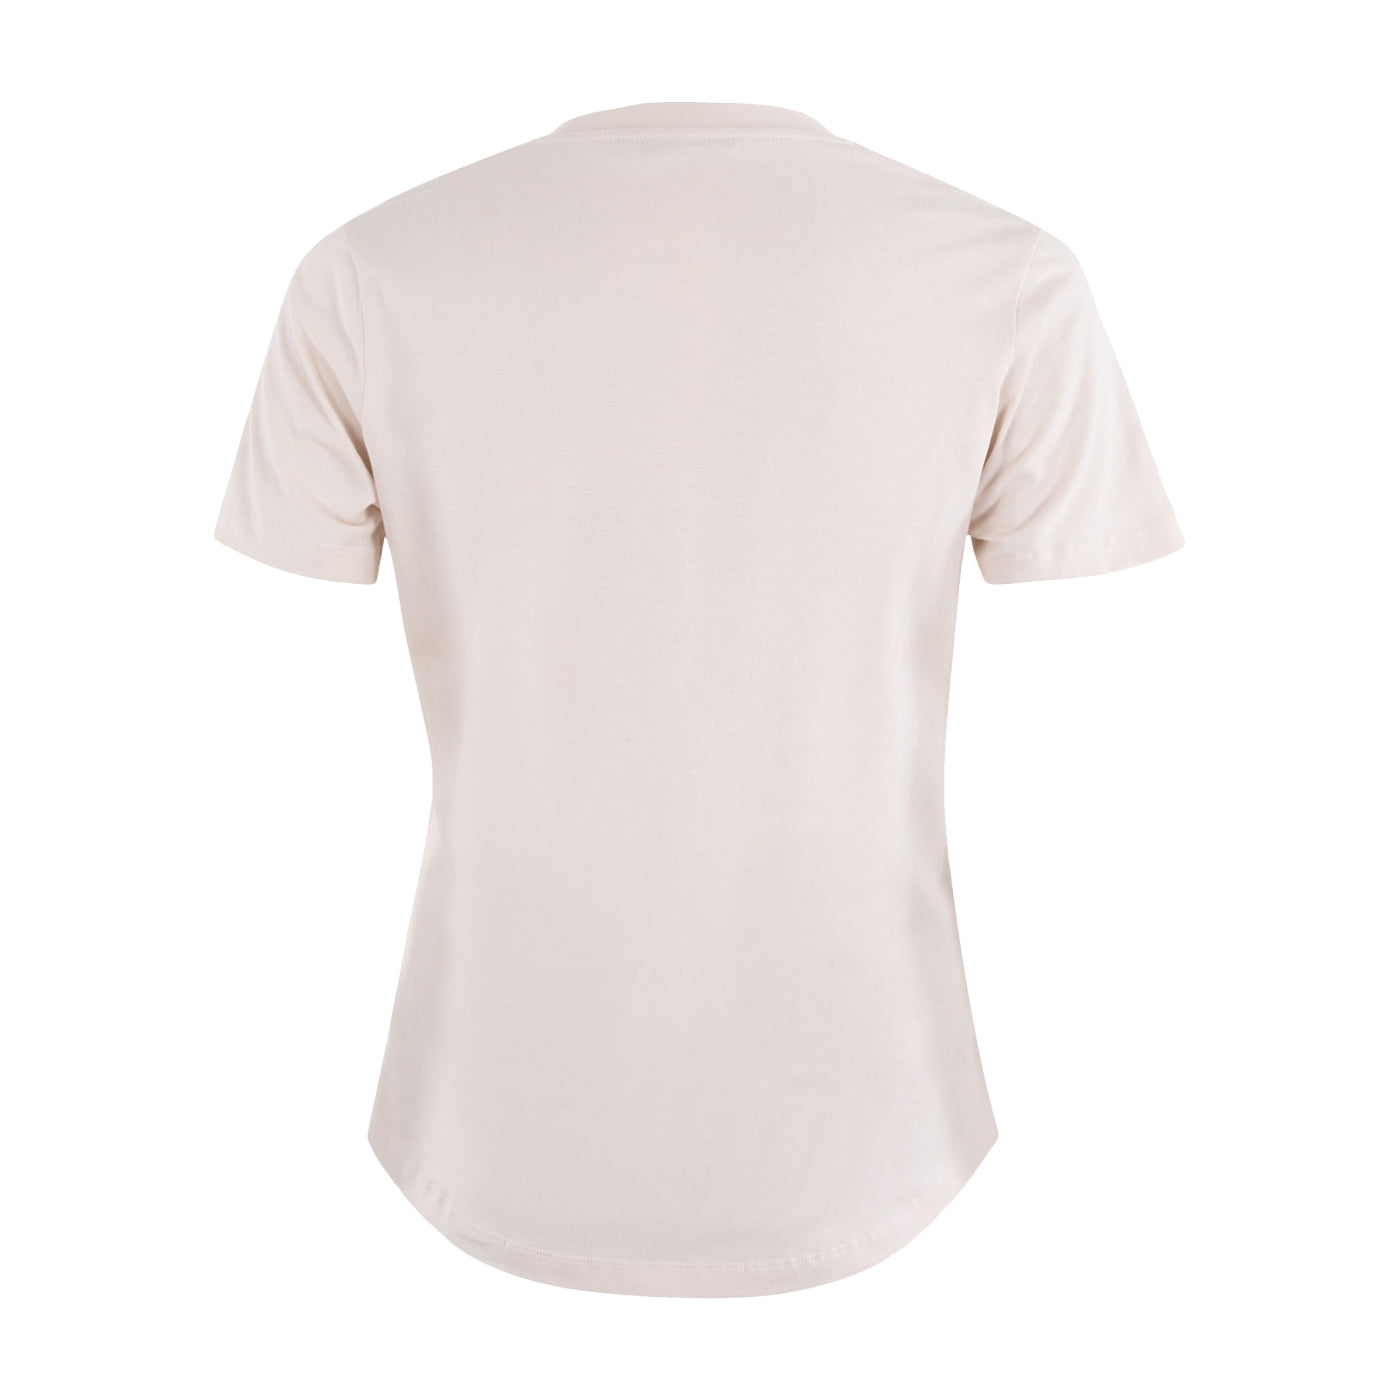 MSCW Mode günstig Mode beige C. kaufen online jetzt in Strauch sale Designer – T-Shirt